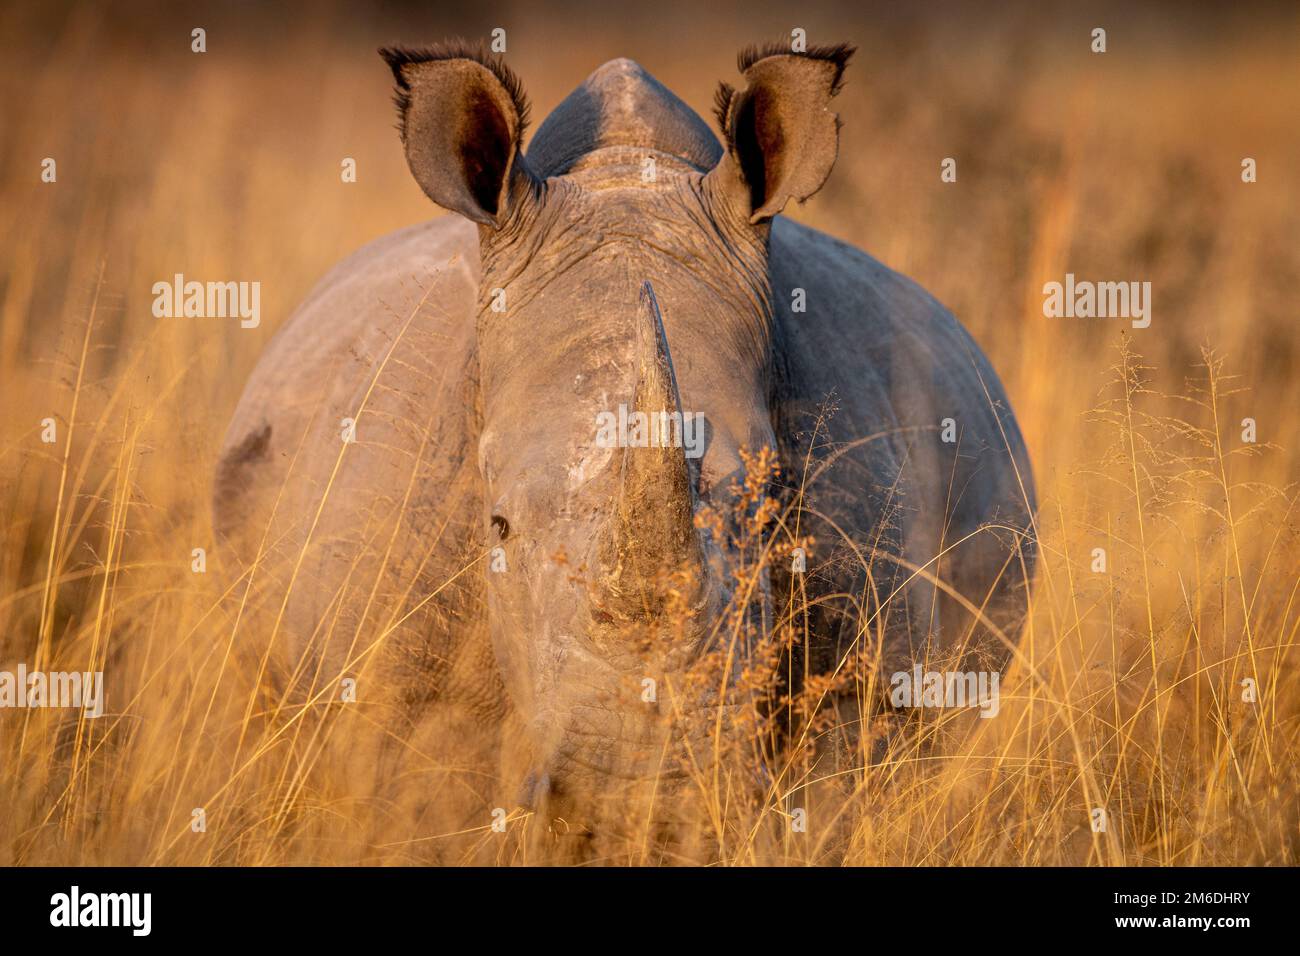 Rhinocéros blanc debout dans l'herbe haute. Banque D'Images